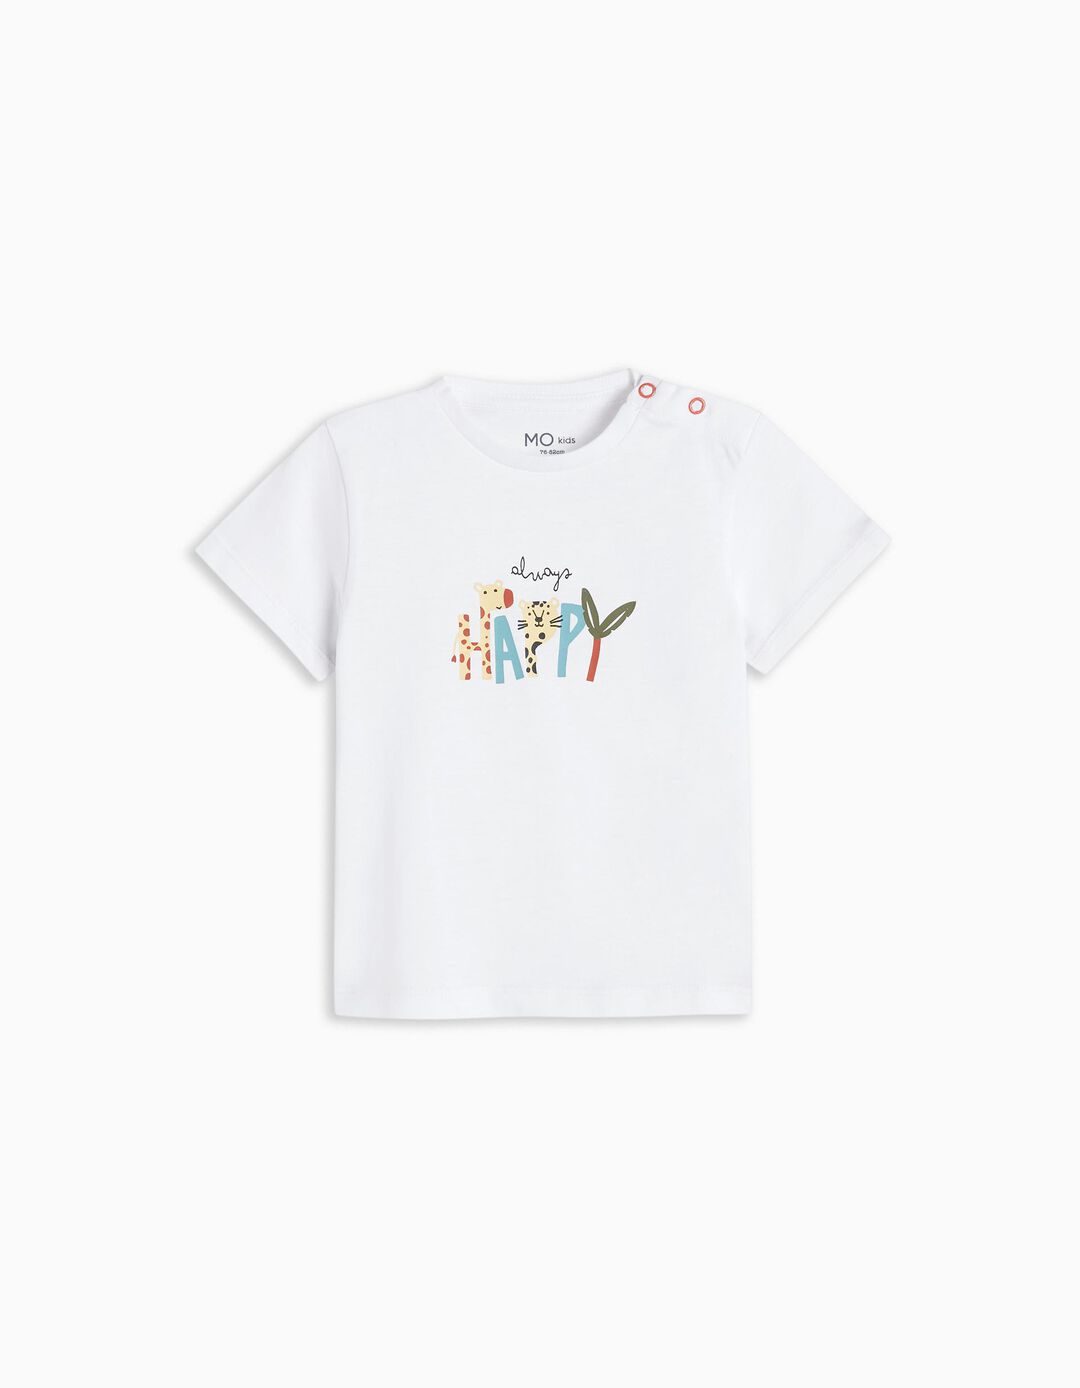 T-shirt, Baby Boys, White